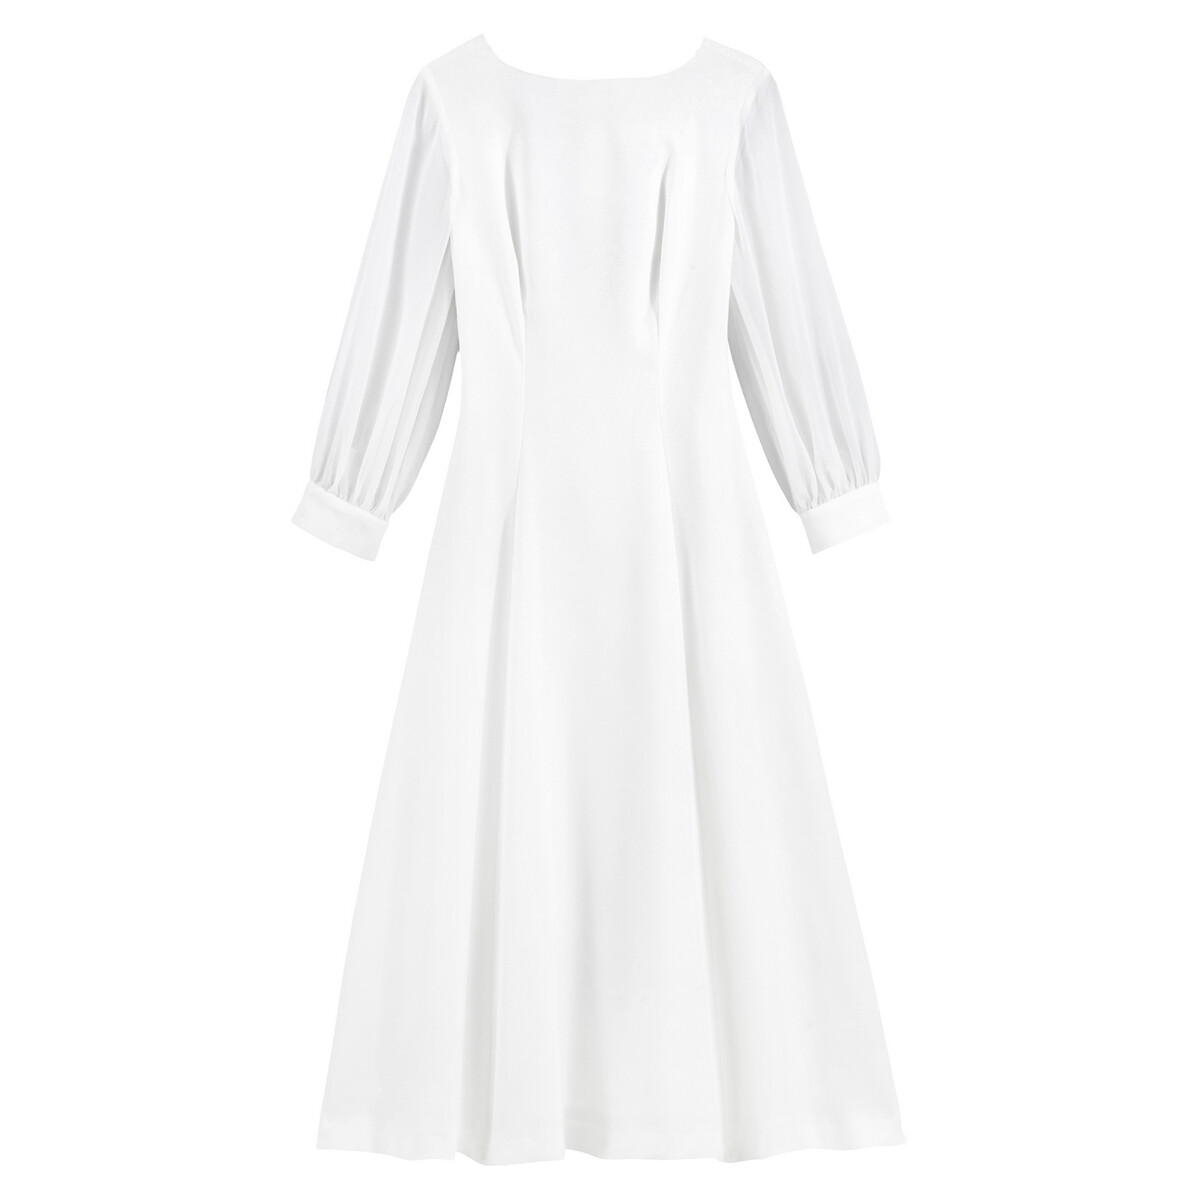 Платье La Redoute Невесты длинное V-образное декольте 44 (FR) - 50 (RUS) белый, размер 44 (FR) - 50 (RUS) Невесты длинное V-образное декольте 44 (FR) - 50 (RUS) белый - фото 5